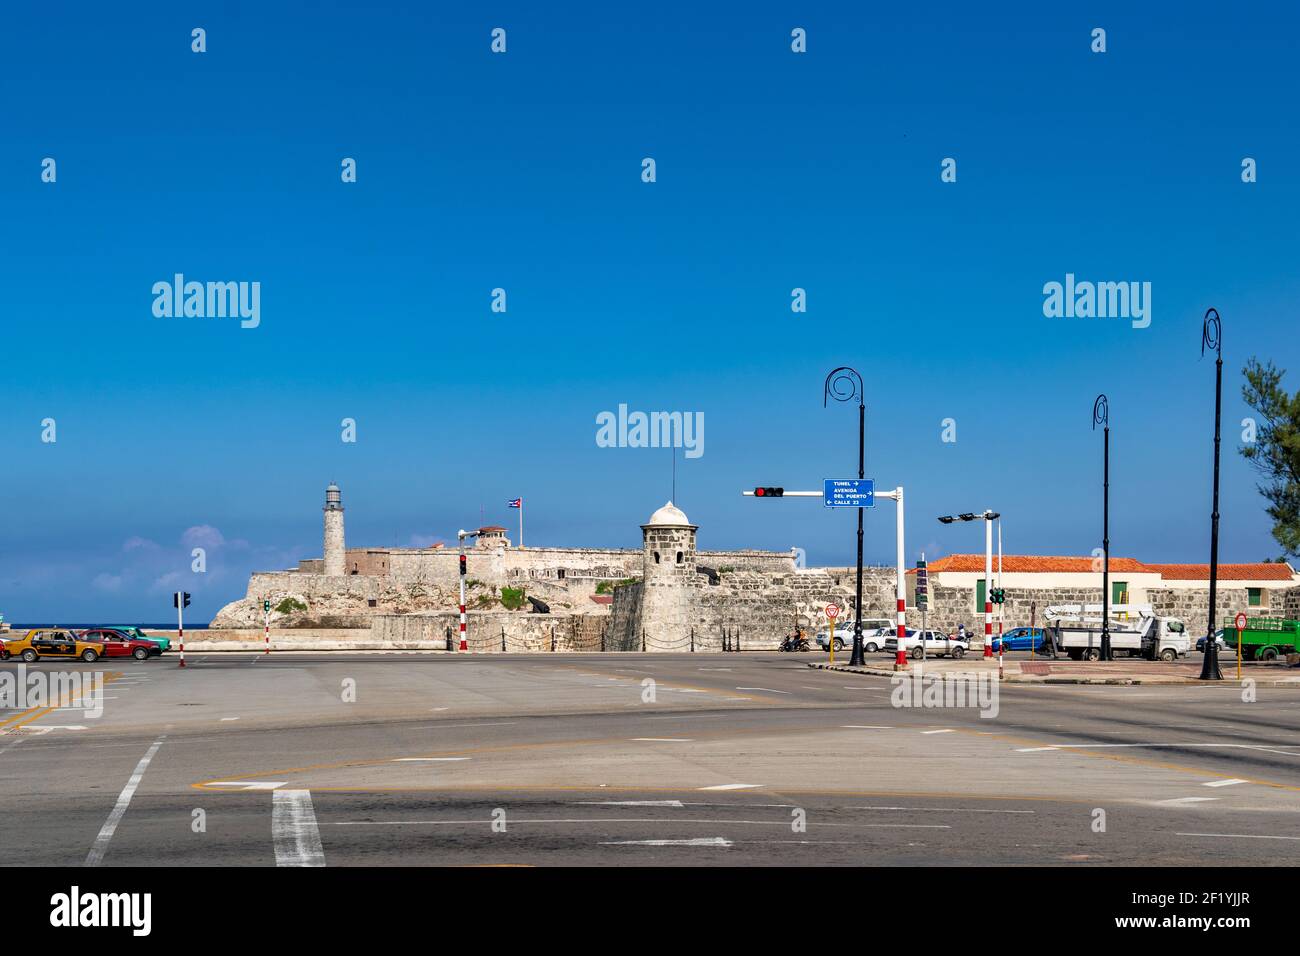 L'Avana Cuba. 25 novembre 2020: Morro de la Habana visto da Paseo Marti in una giornata di sole con cielo blu. Luogo storico e turistico Foto Stock